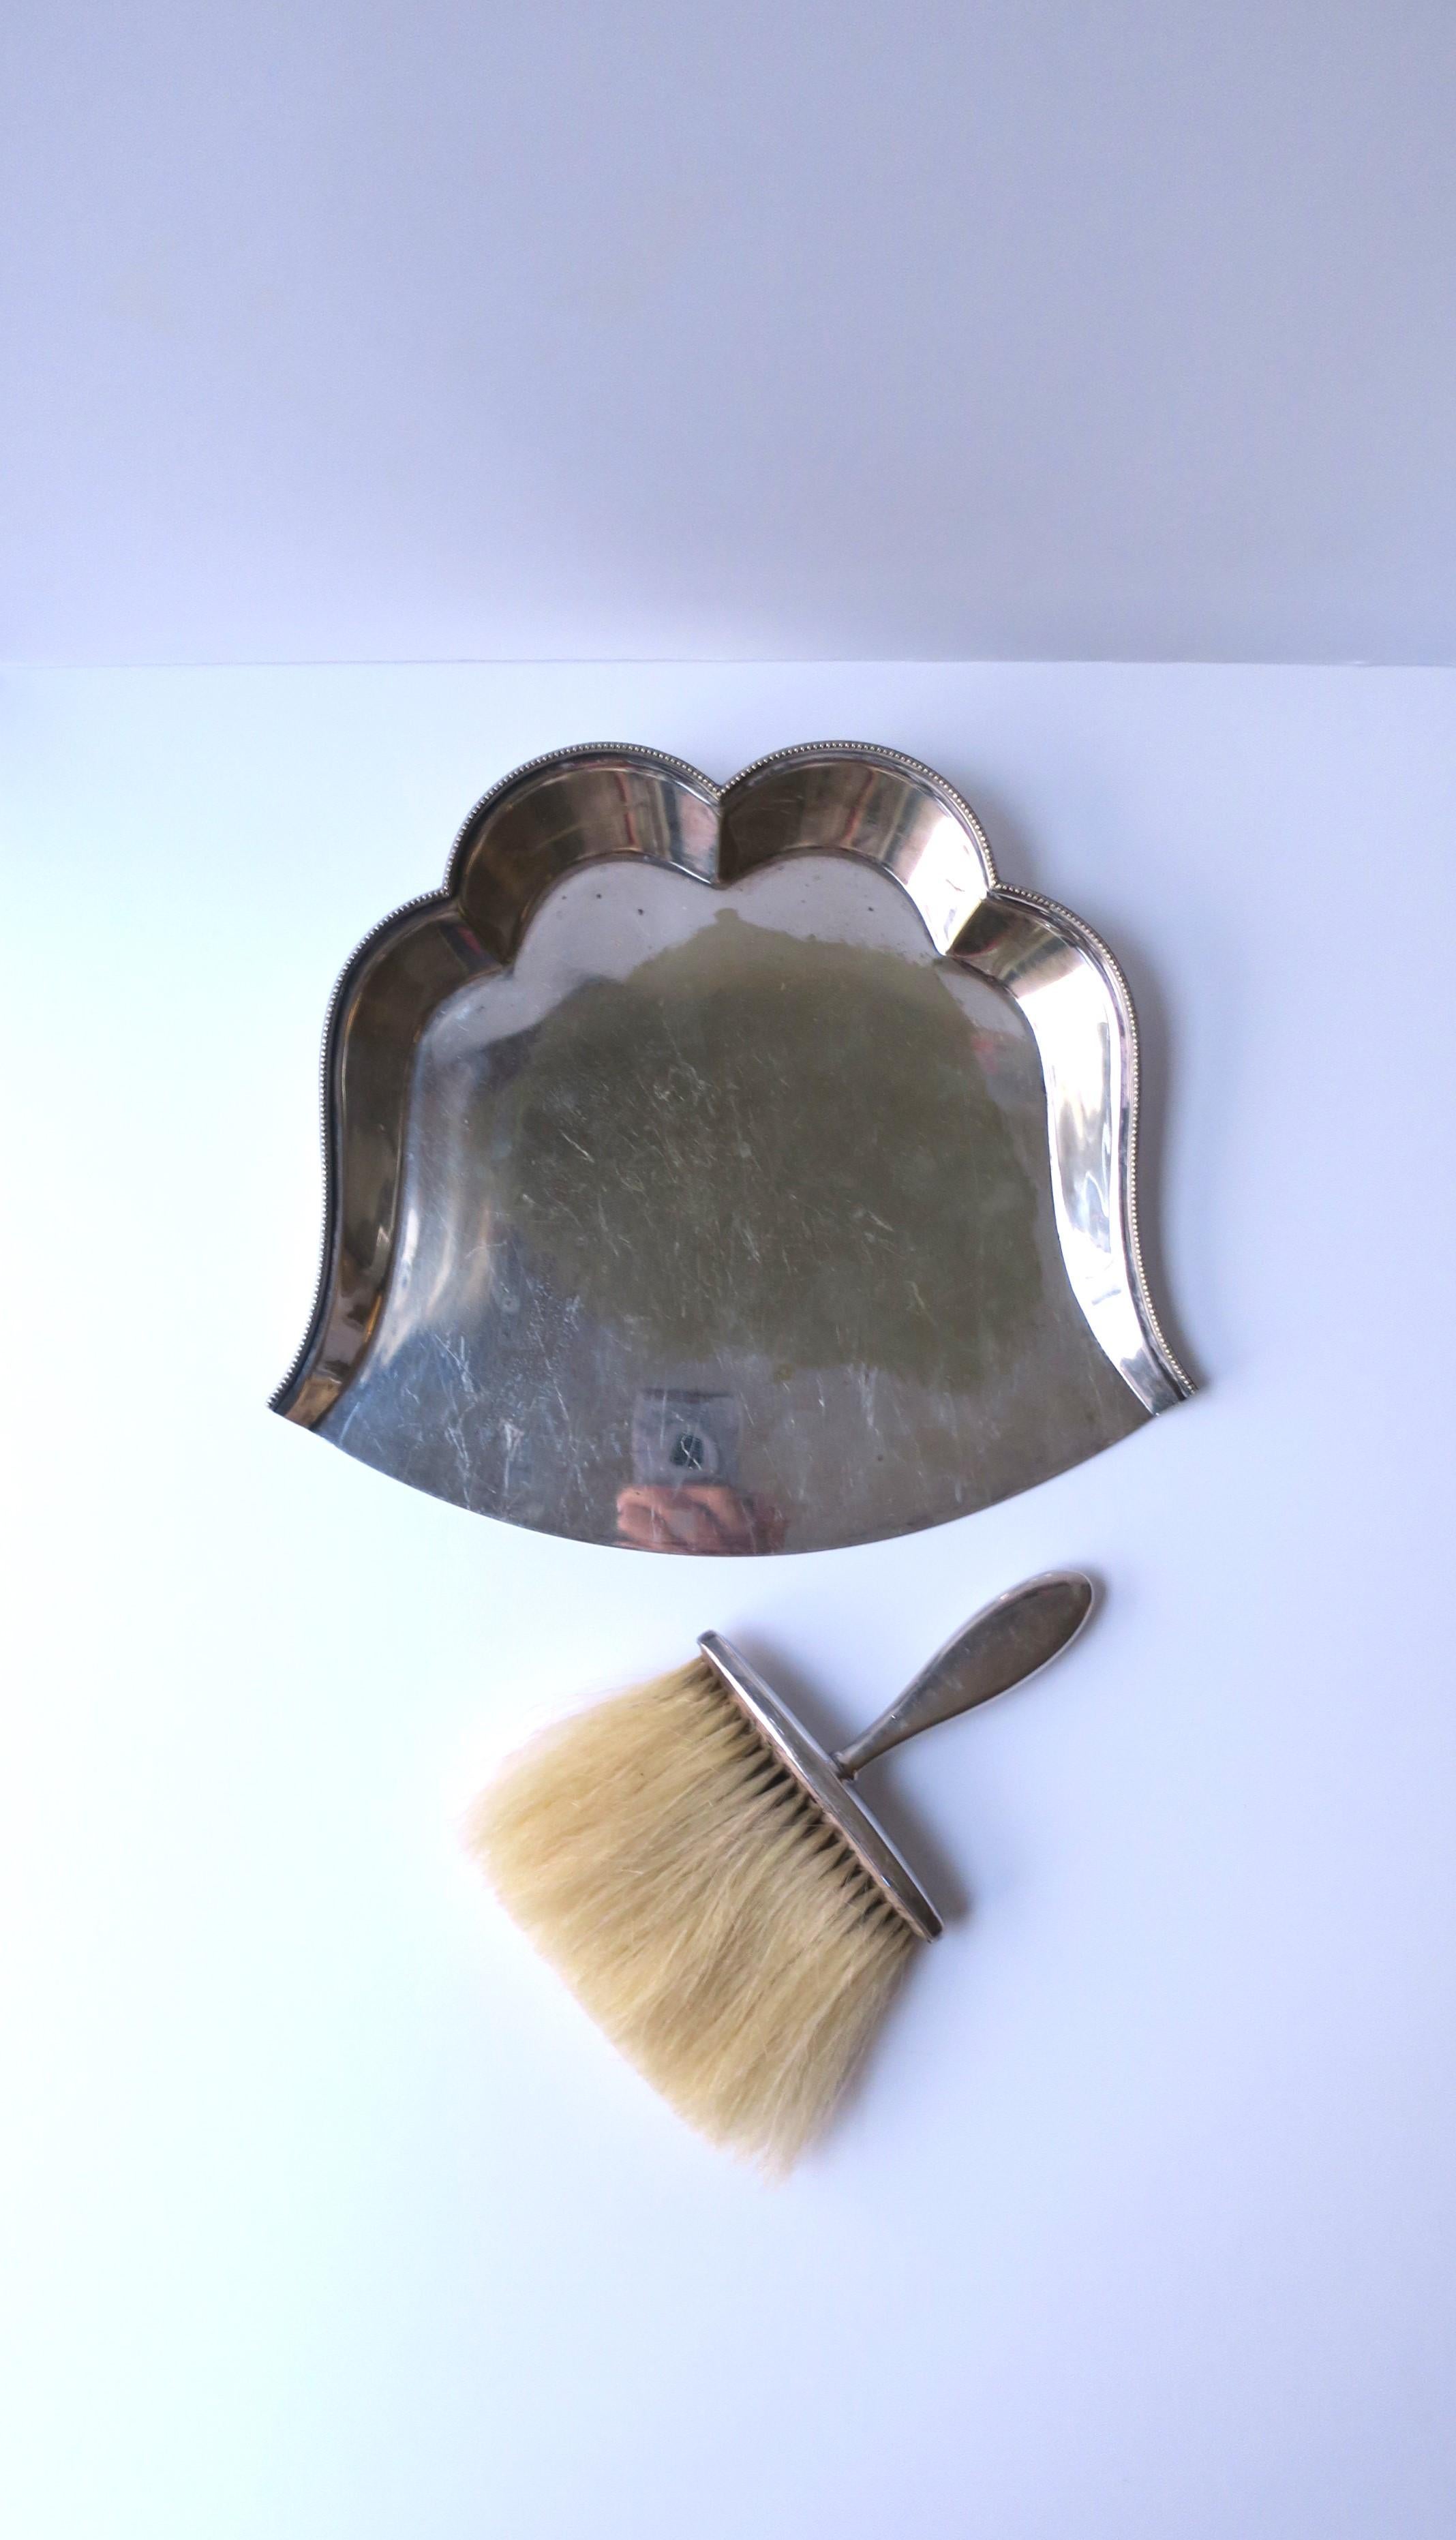 Un ramasse-miettes et un balai de table en métal argenté de Hardy Bros Sidney & Brisbane, vers le 20e siècle, Angleterre. Avec la marque du fabricant sur les deux, comme indiqué sur les images. 

Dimensions : 
Cuvette/plateau : 1,75